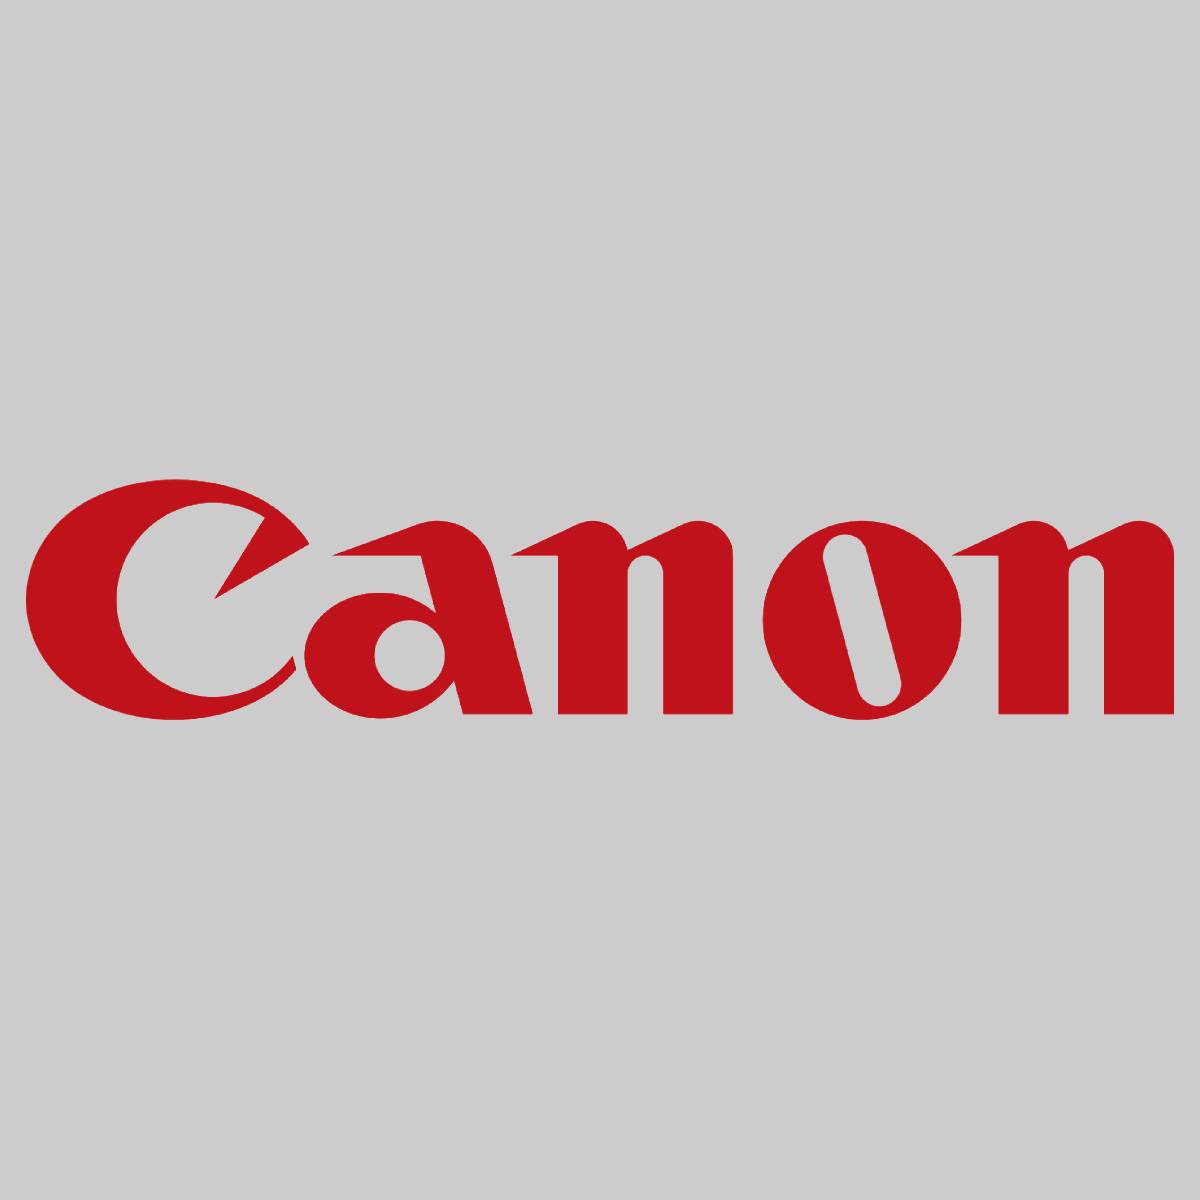 "Toner d'origine Canon C-EXV19 noir 0397B002 imagePRESS C 1 imagePRESS C 1 Plus